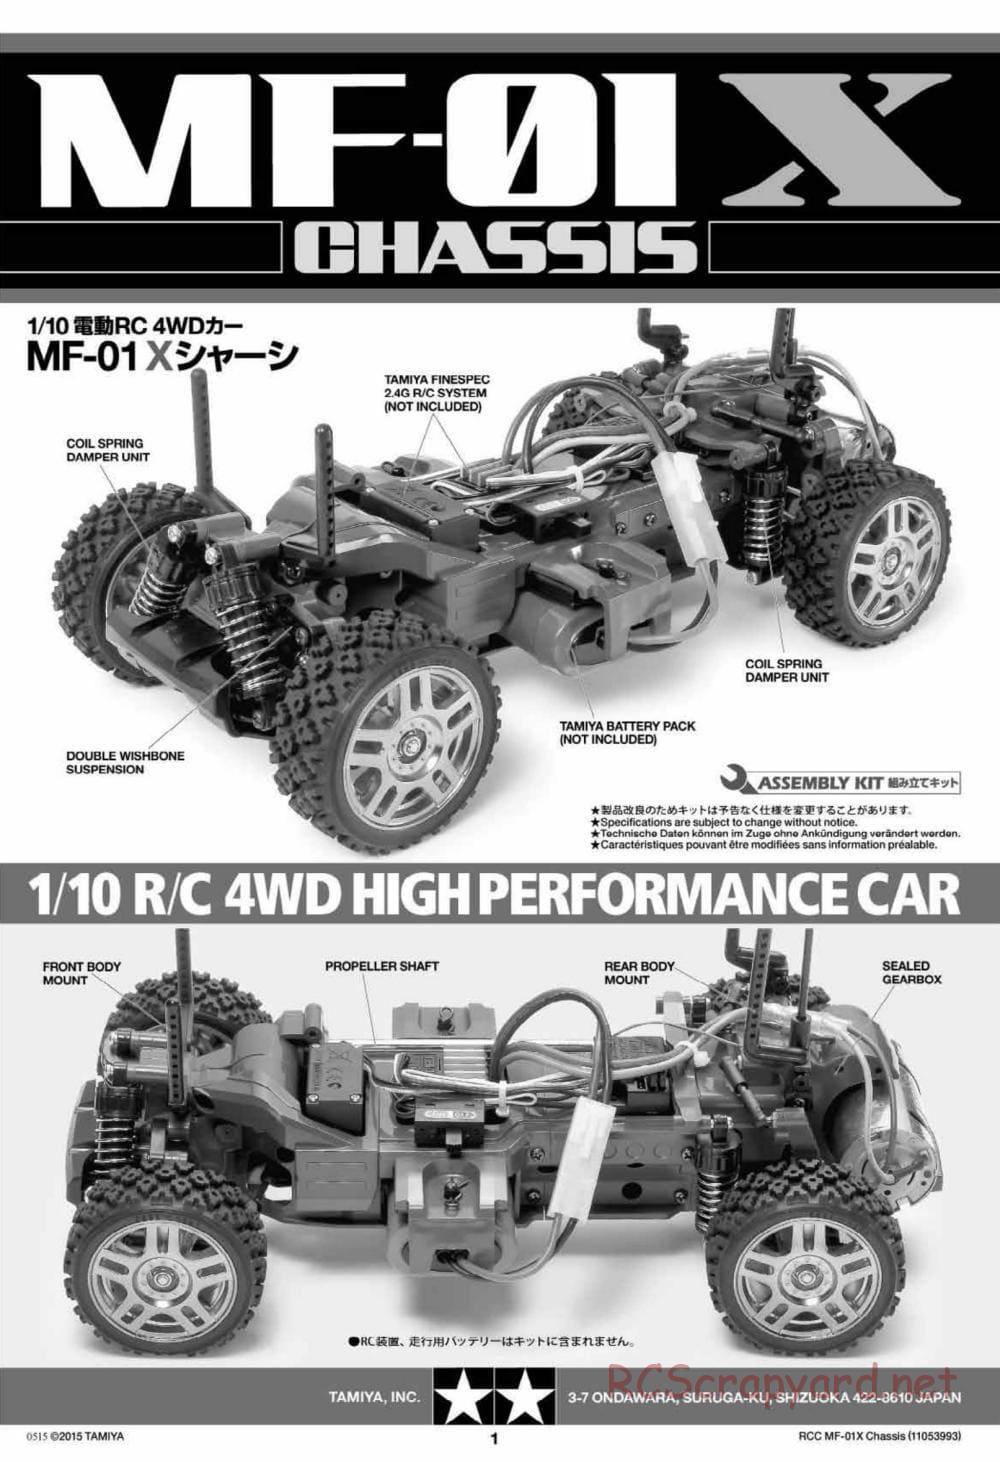 Tamiya - MF-01X Chassis - Manual - Page 1